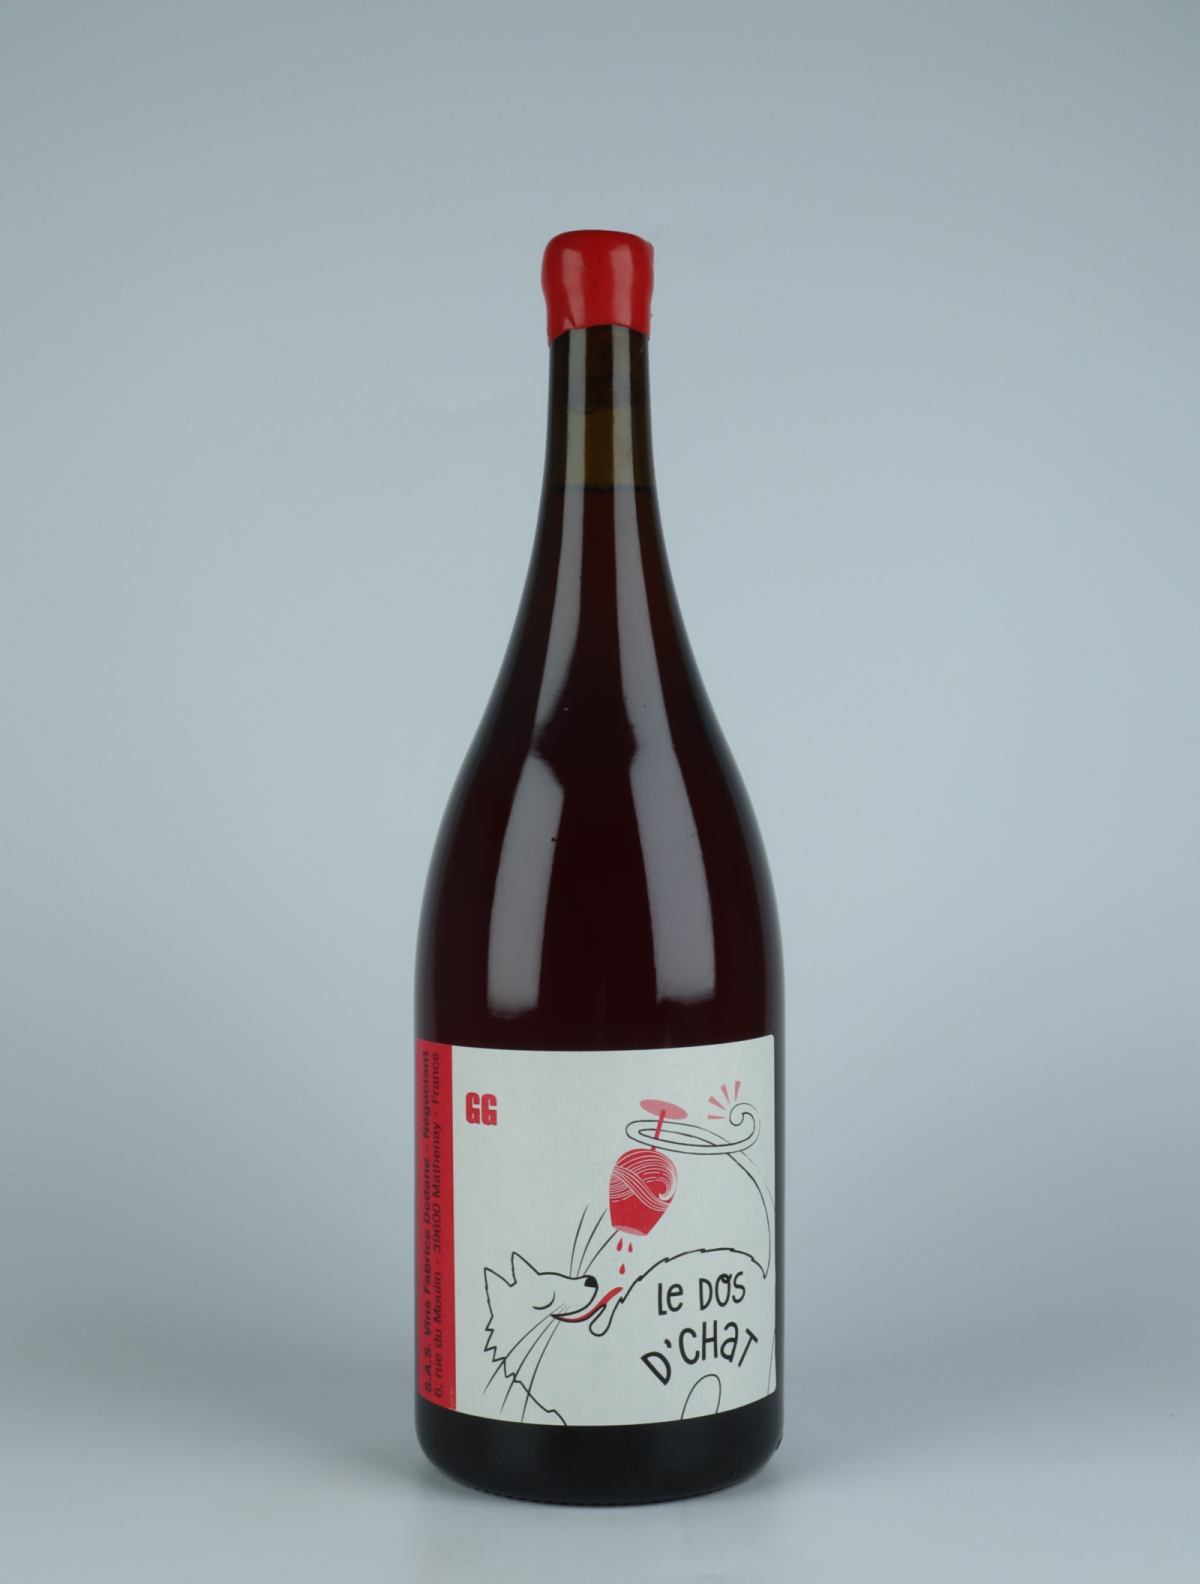 En flaske 2021 G.G. Rouge - Magnum Rødvin fra Fabrice Dodane, Jura i Frankrig